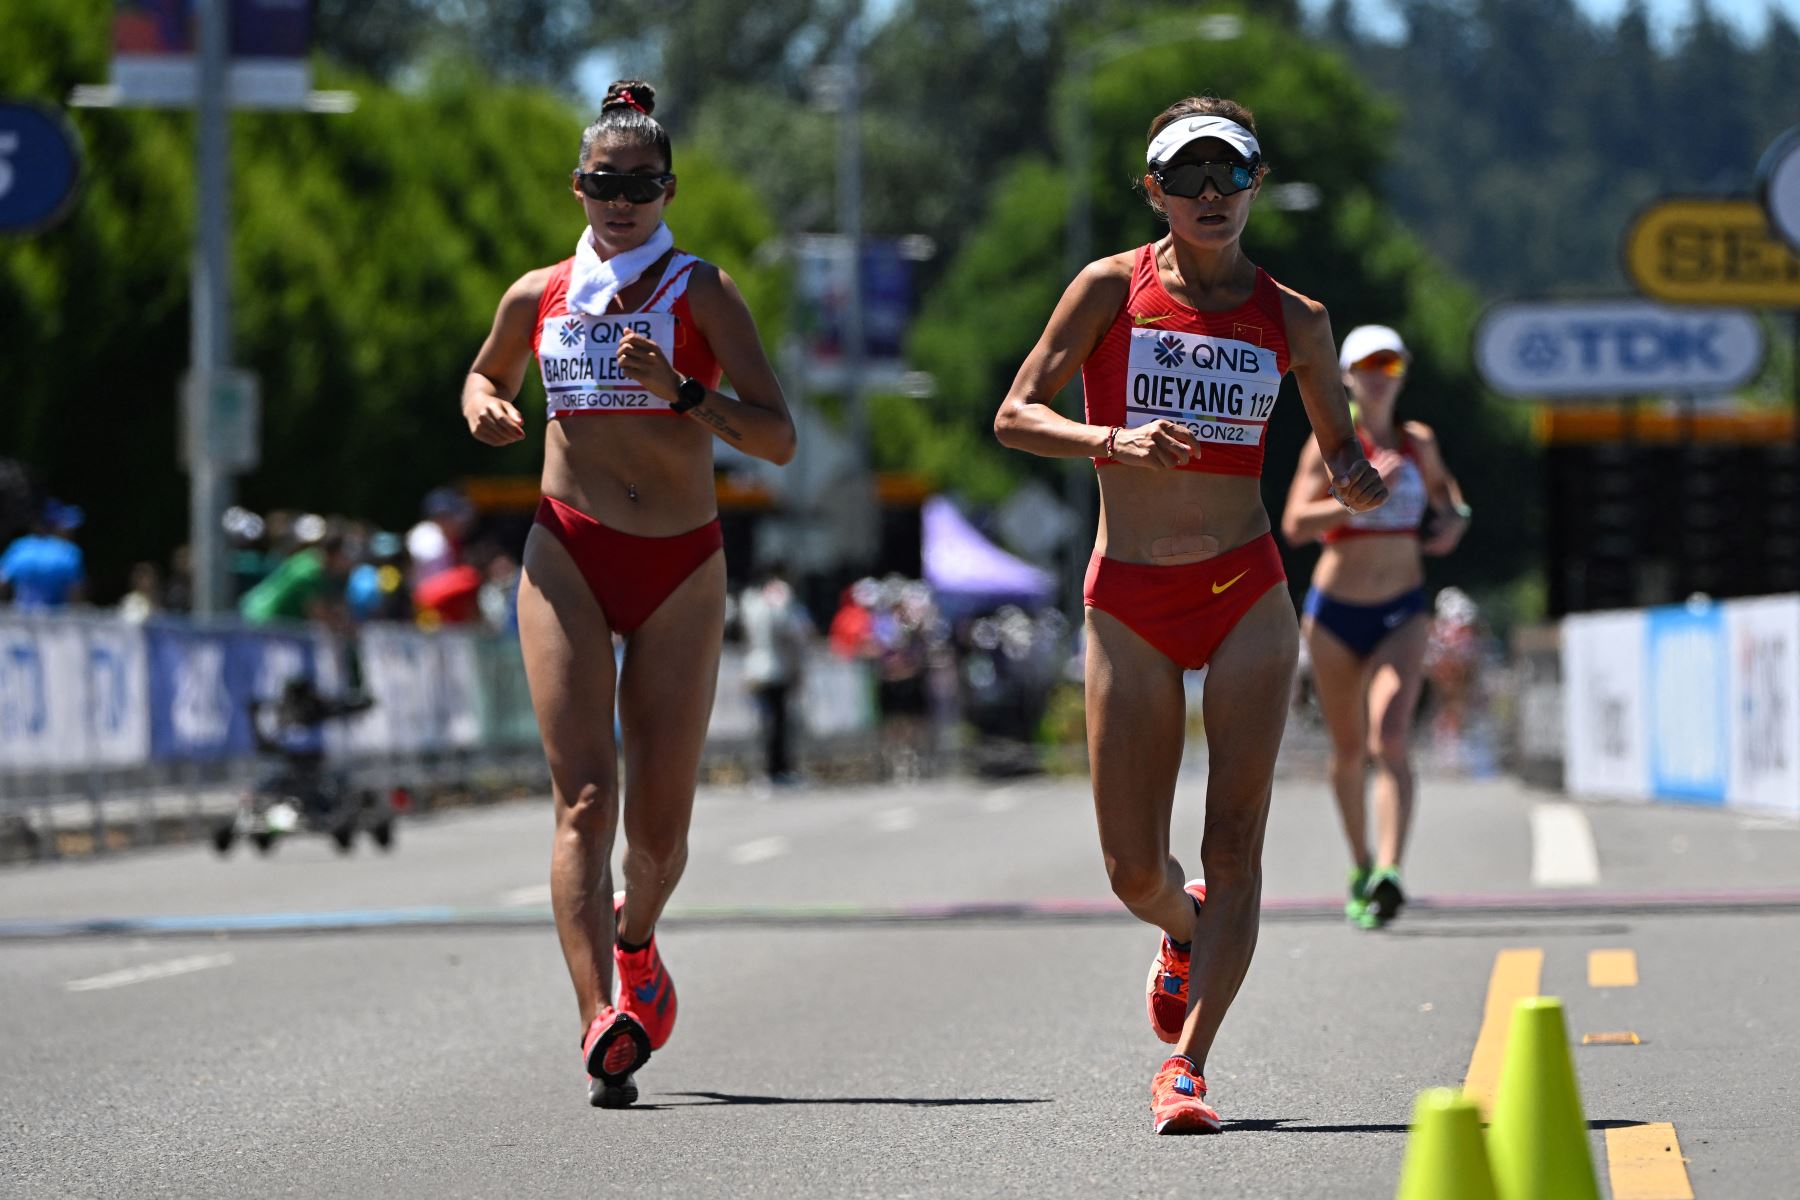 La peruana Kimberly García León  y la china Qieyang Shijie compiten en la final de carrera de 20 km de mujeres durante el Campeonato Mundial de Atletismo en Eugene, Oregón.
Foto: AFP